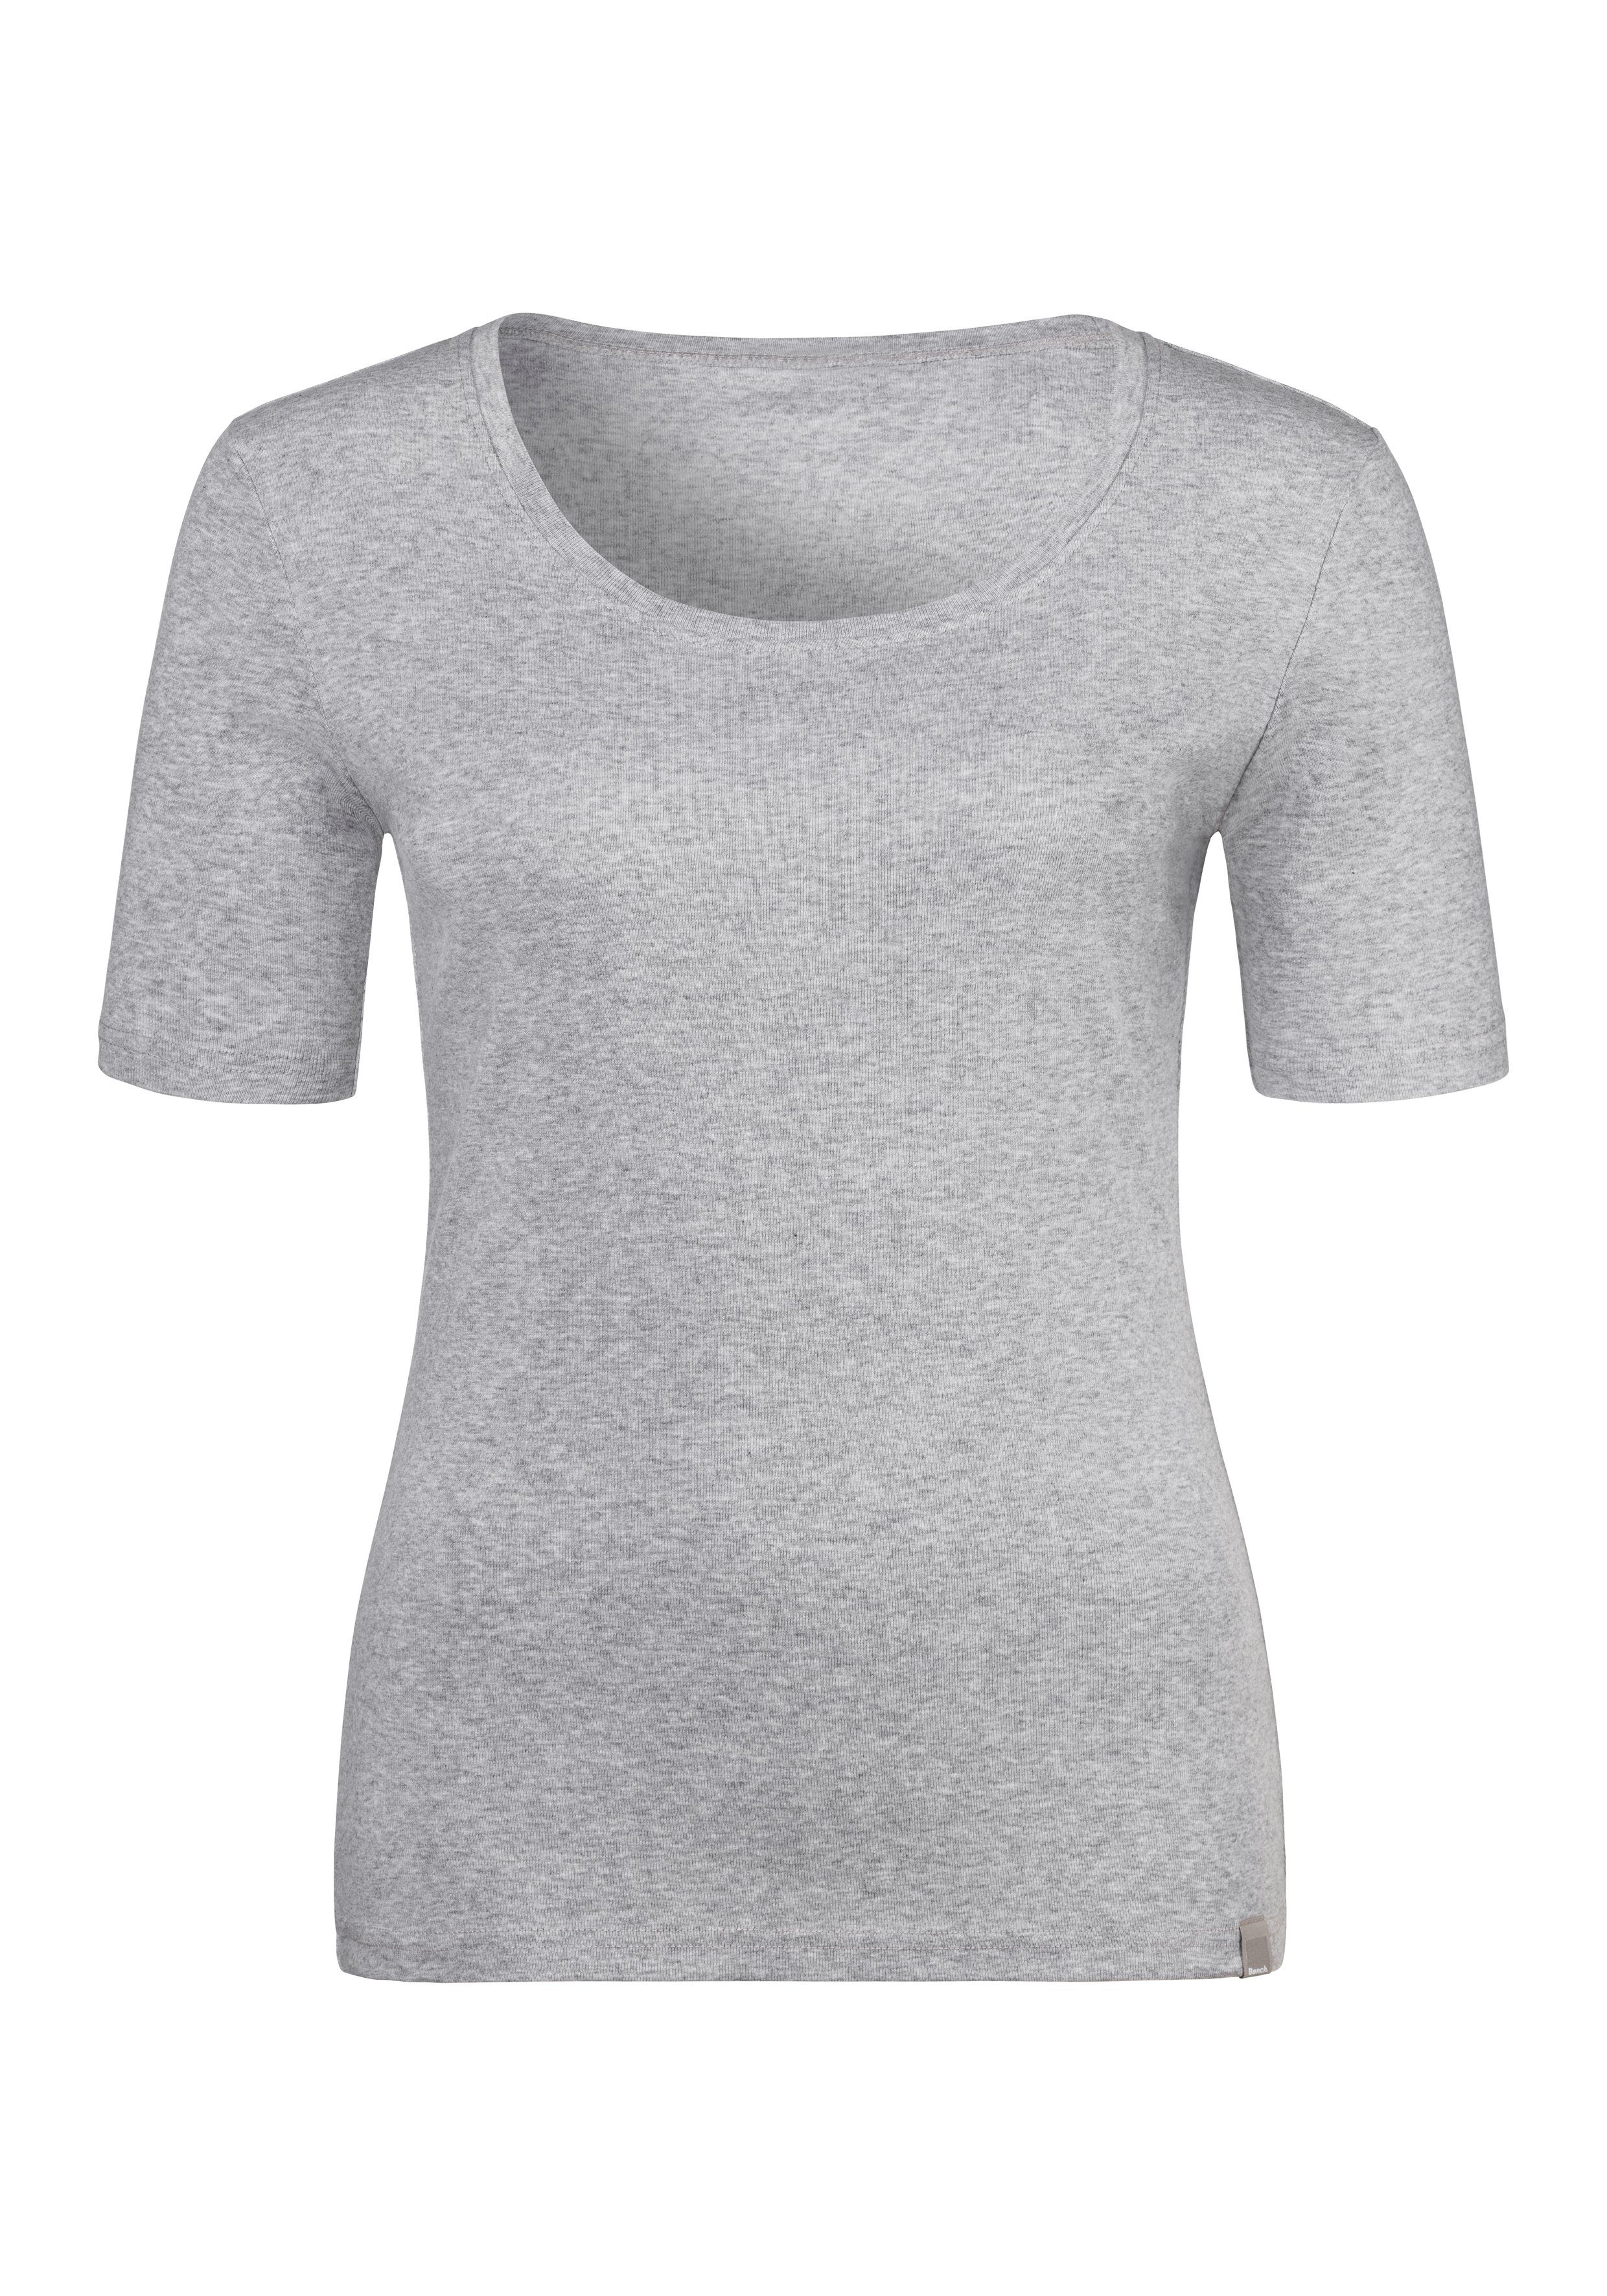 T-Shirt (2er-Pack) aus Feinripp-Qualität, Bench. schwarz, weicher grau-meliert Unterziehshirt